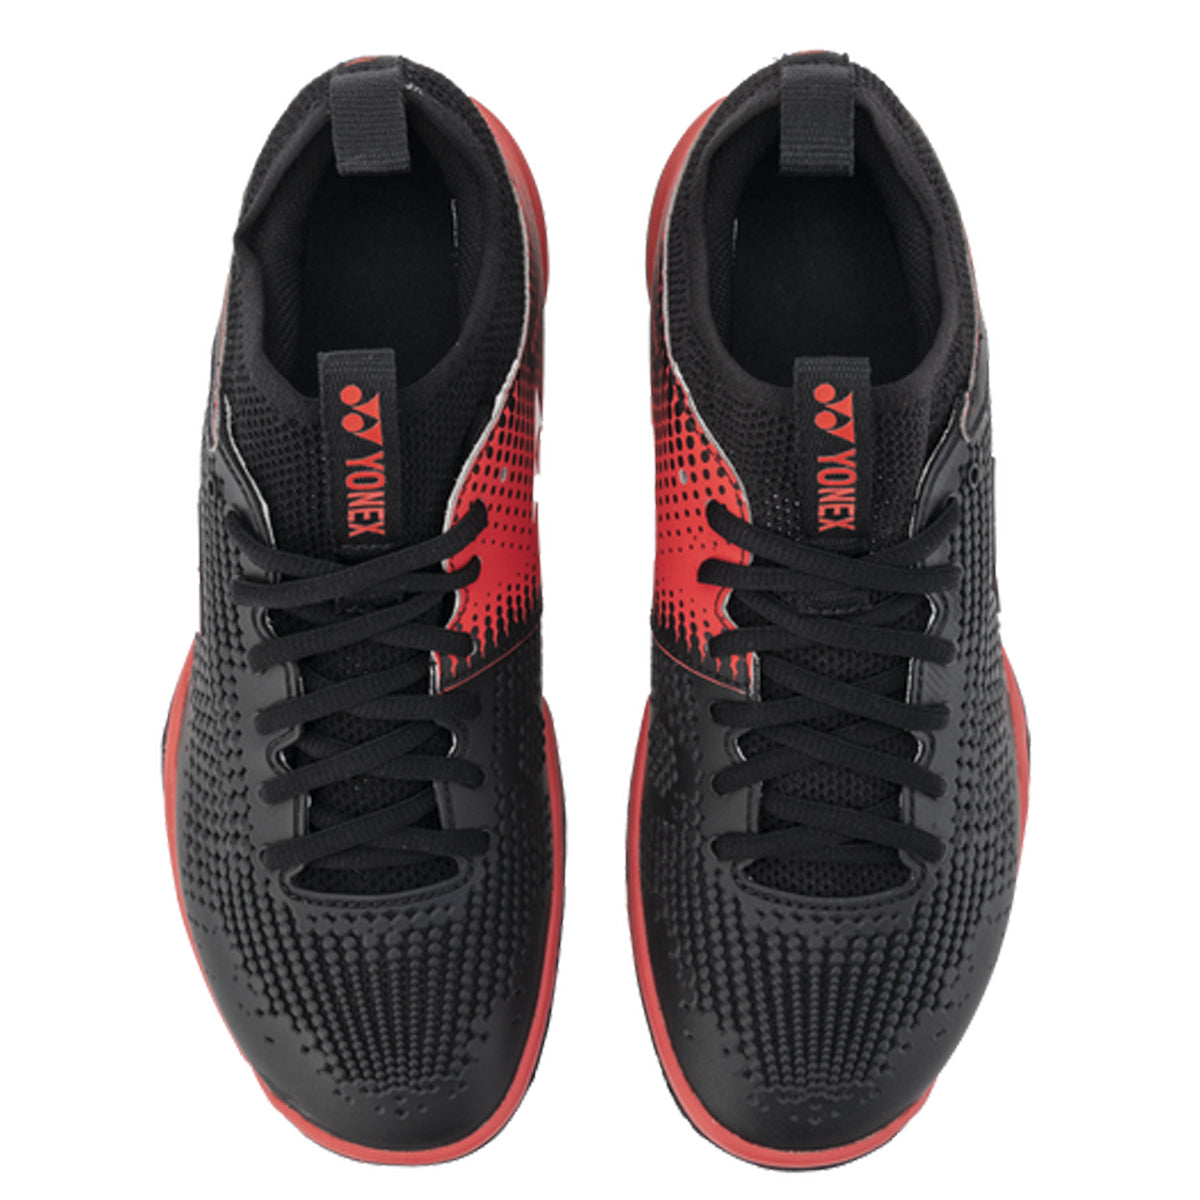 Yonex Eclipsion Z MEN Power Cushion Badminton Shoes - Black/Red - Best Price online Prokicksports.com